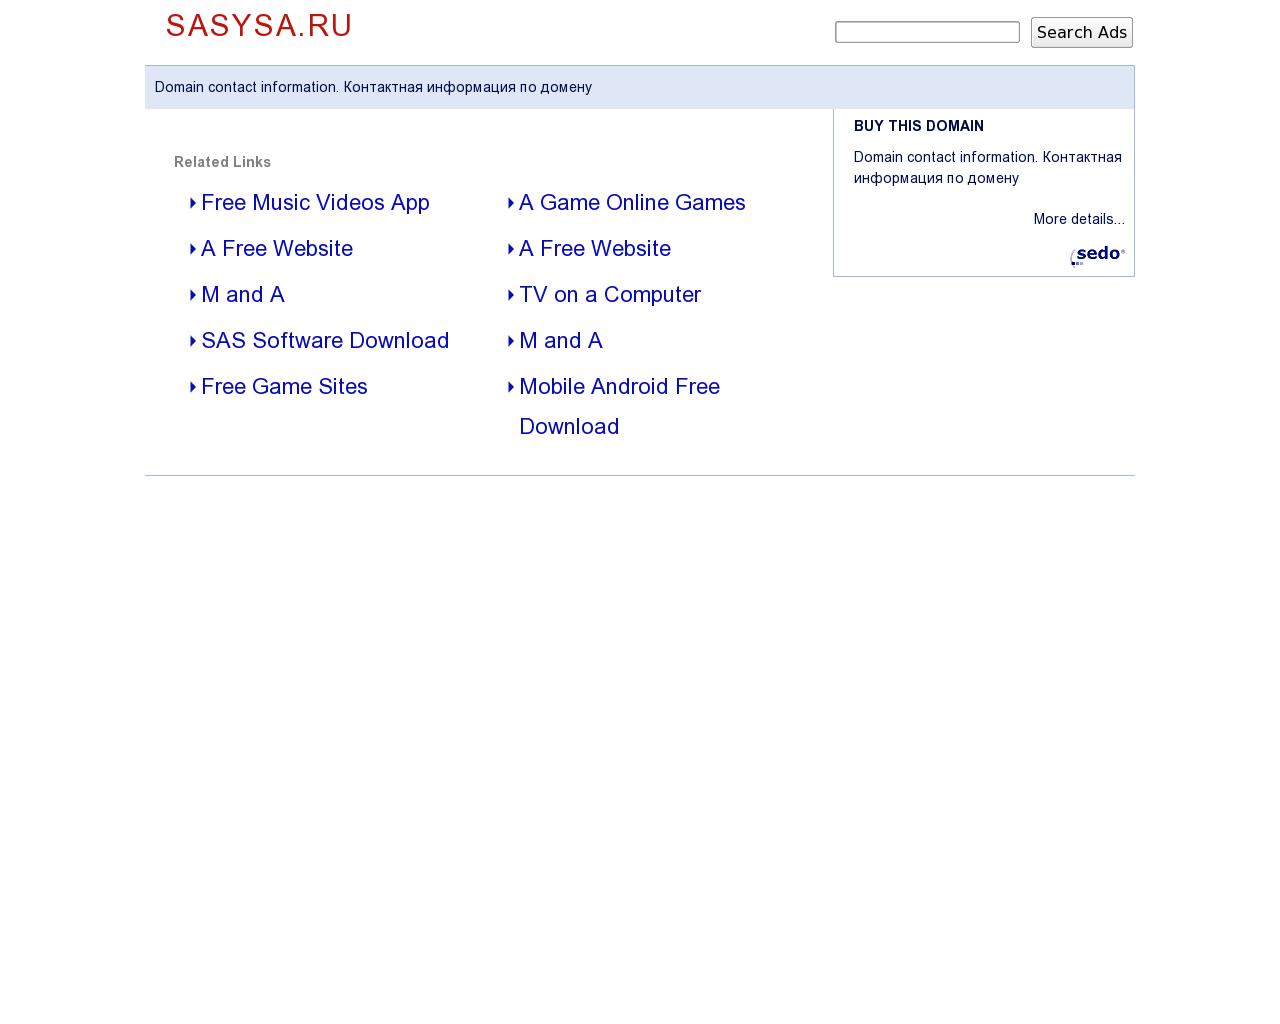 Изображение сайта sasysa.ru в разрешении 1280x1024